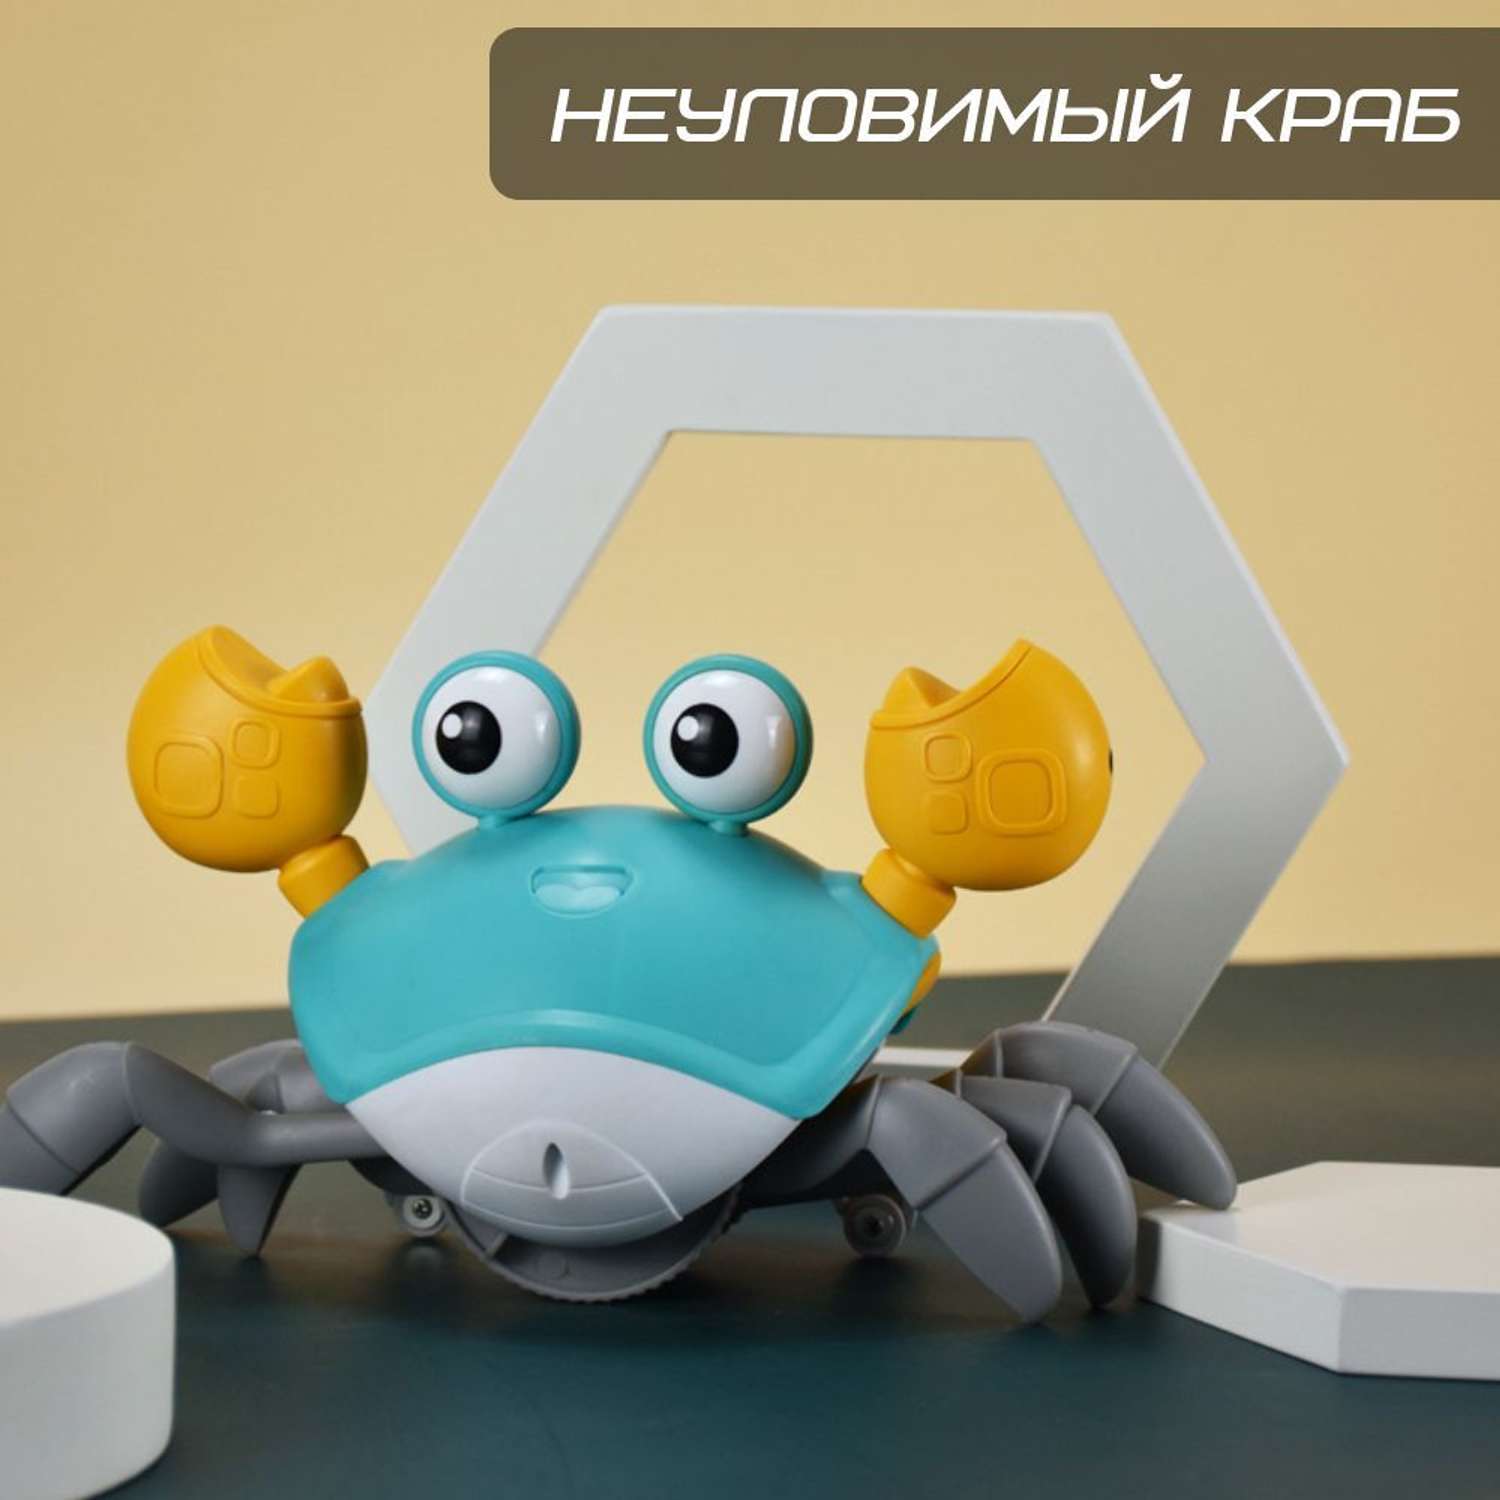 Краб бегающий ЦДМ Игрушки интерактивная развивающая сенсорная игрушка - фото 1